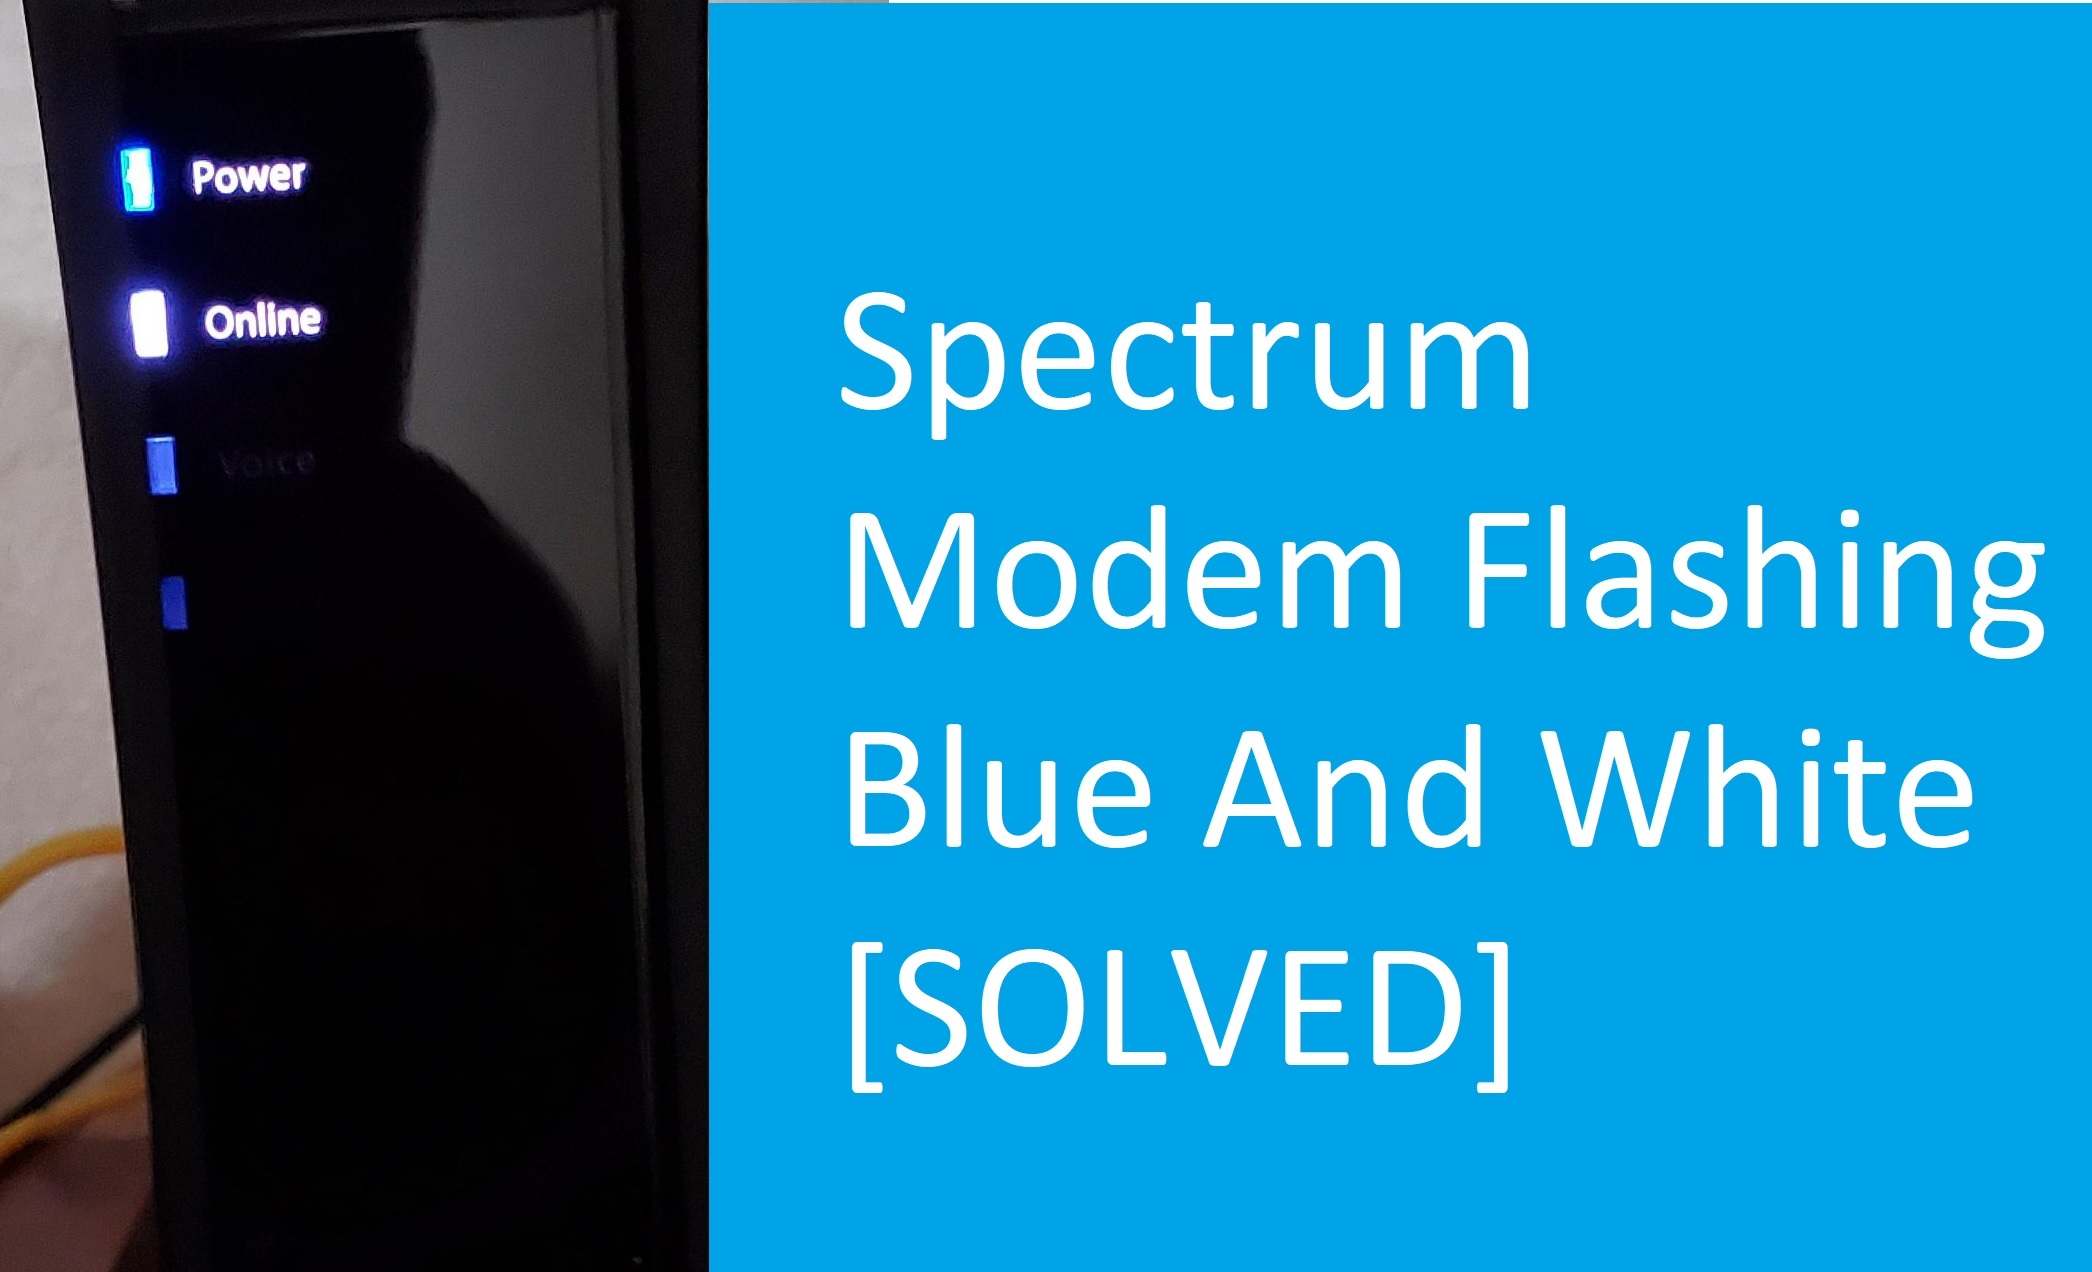 Spectrum Modem Online Light Blinking White and Blue